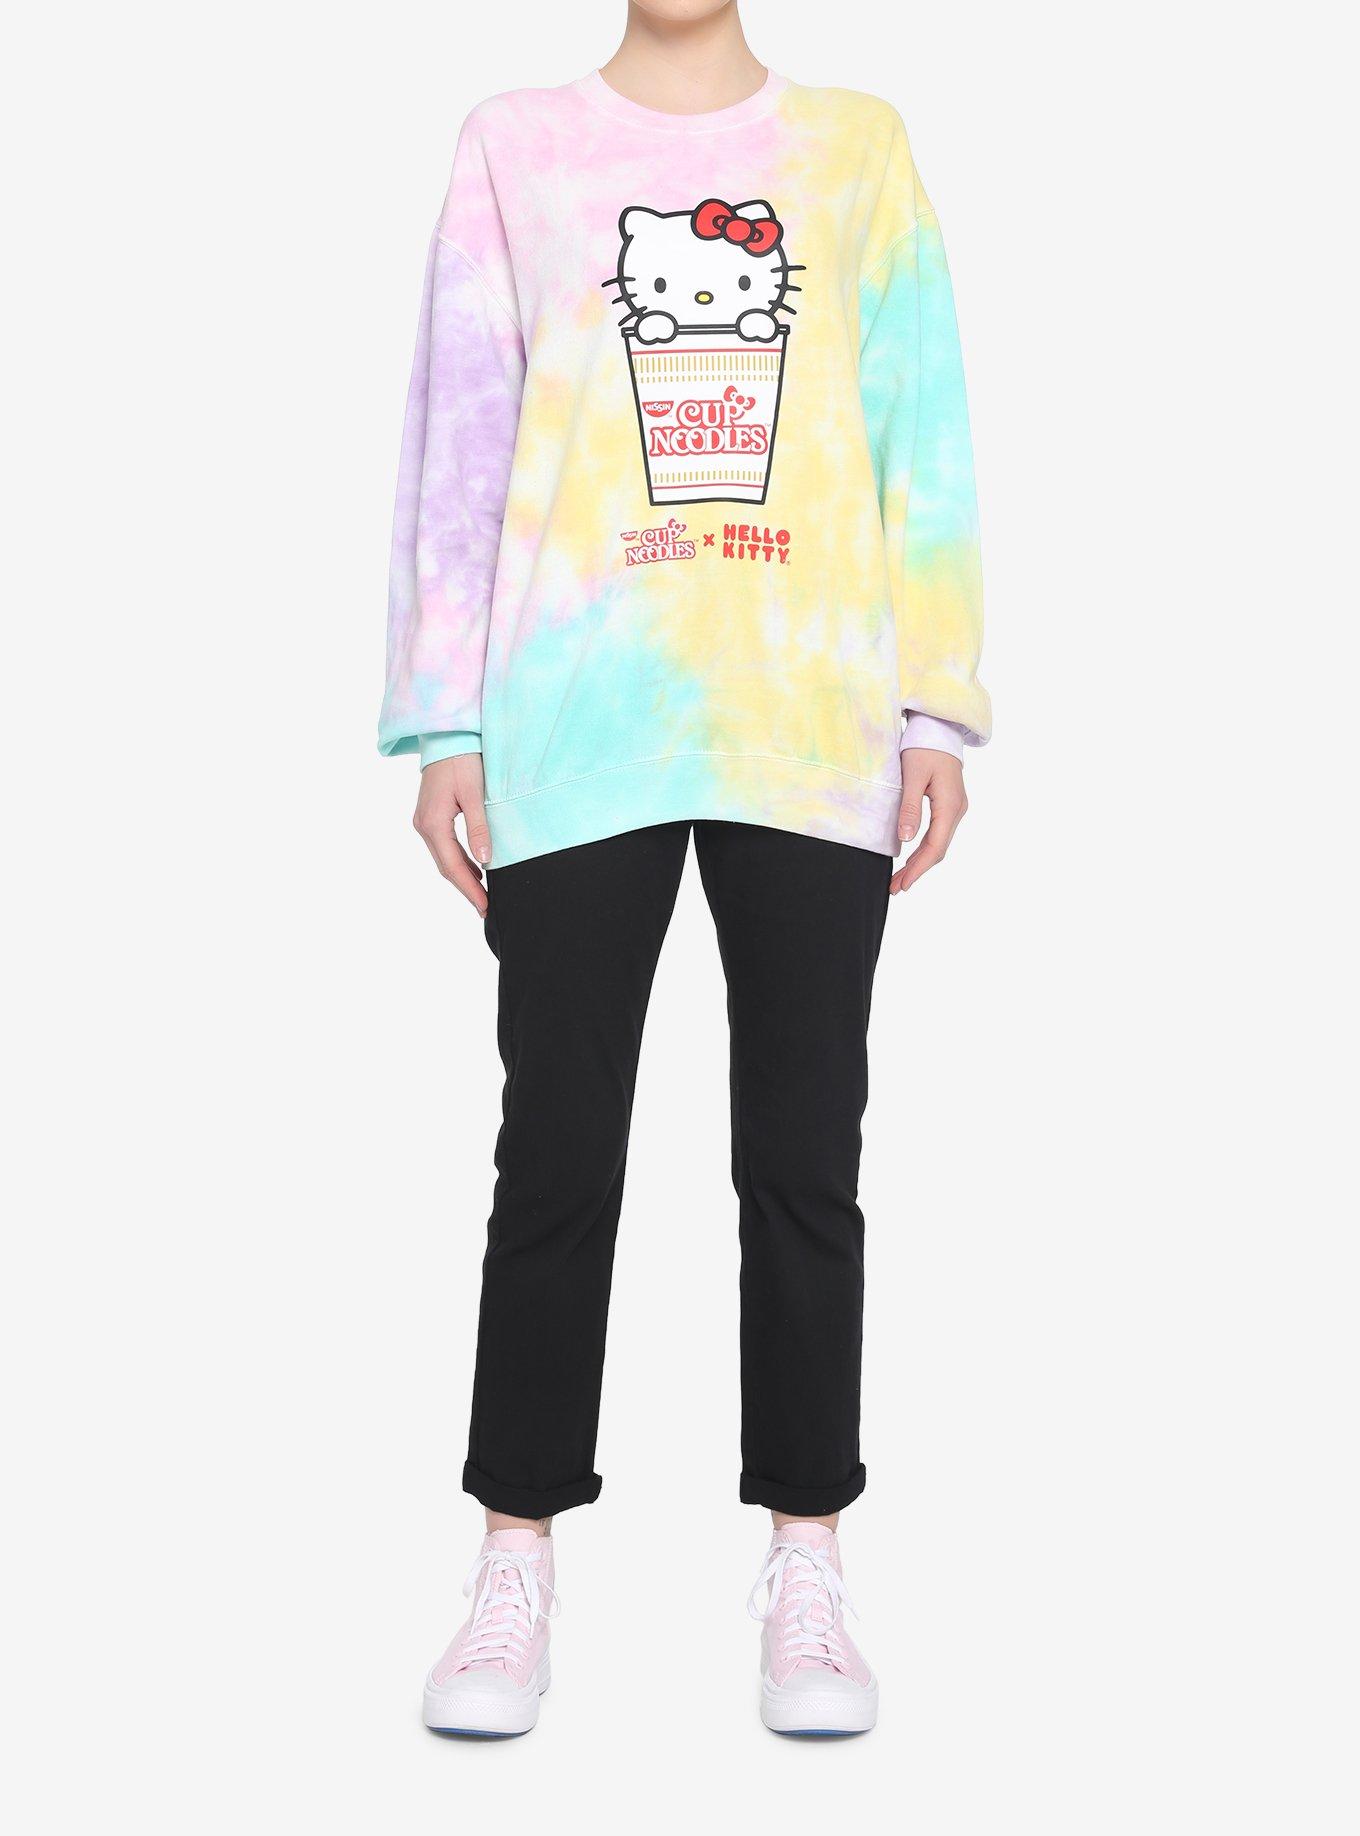 Nissin Cup Noodles X Hello Kitty Tie-Dye Boyfriend Fit Girls T-Shirt